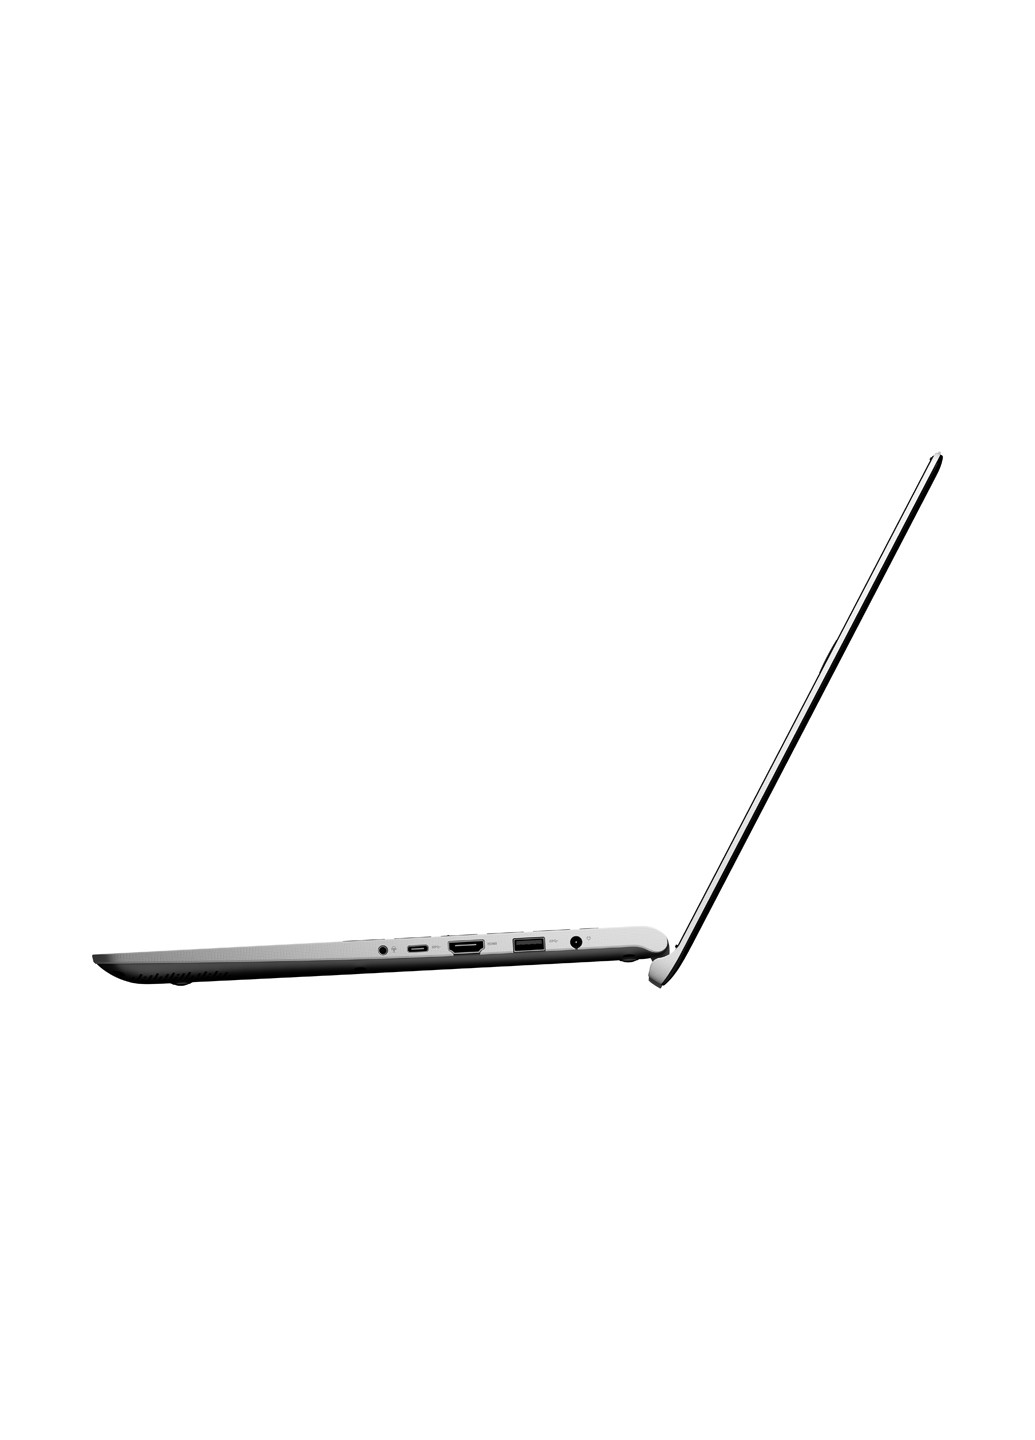 Ноутбук Asus VivoBook S15 S530UA-BQ342T (90NB0I95-M04740) Gun Metal чёрный